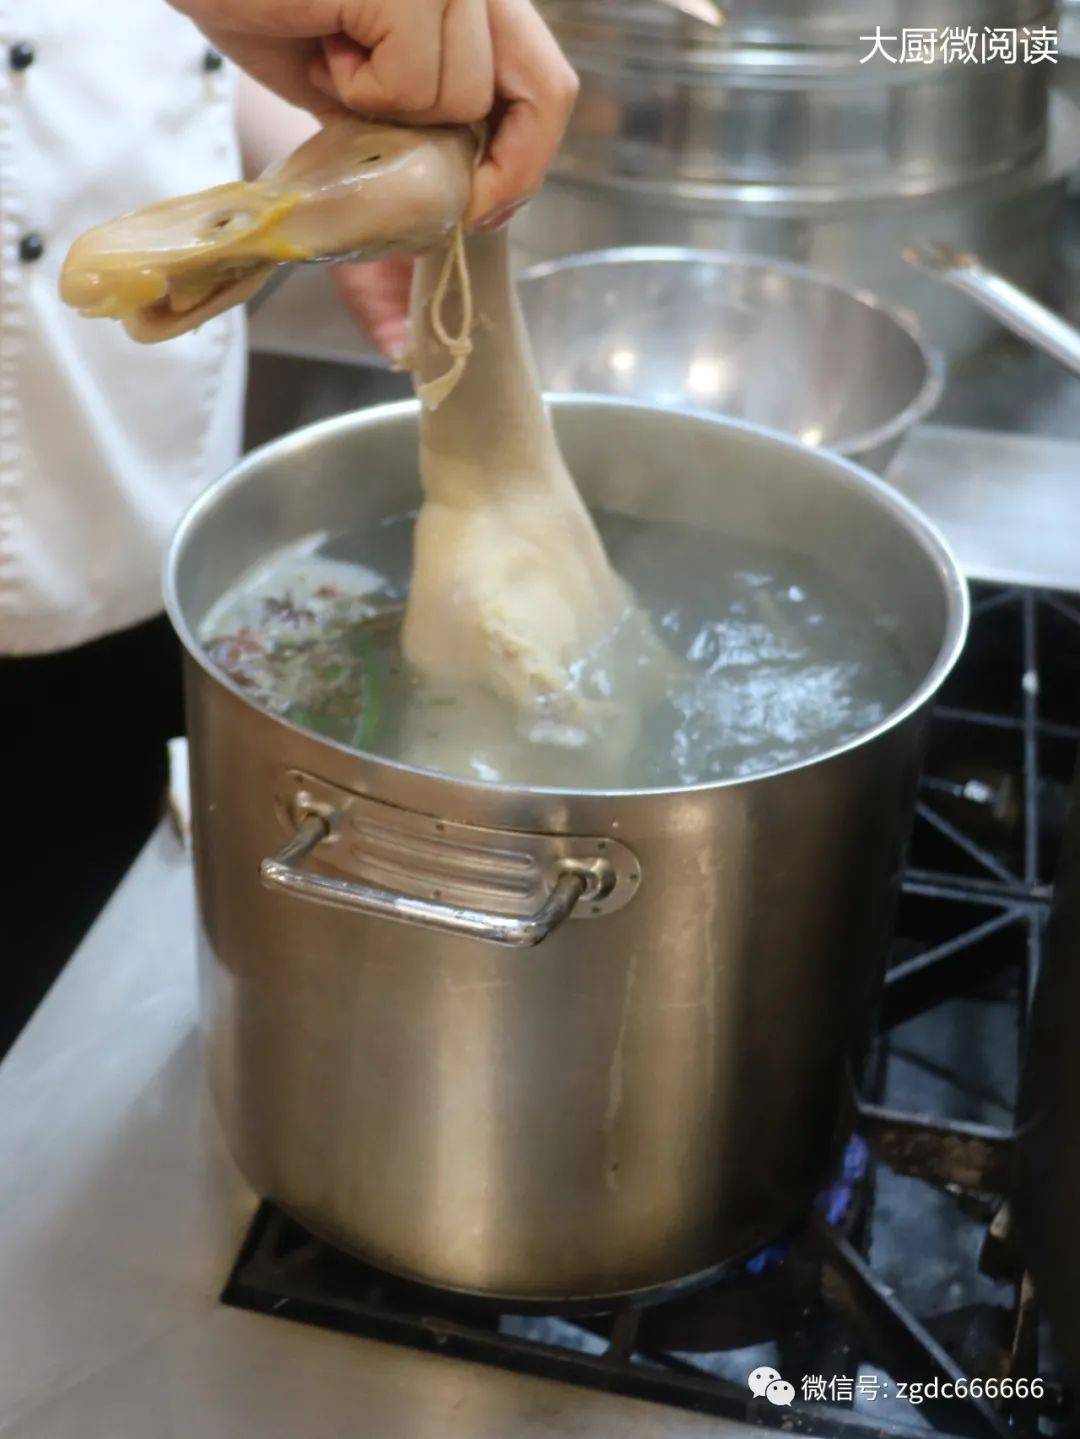 烹饪大师花惠生,详解盐水鸭制作流程